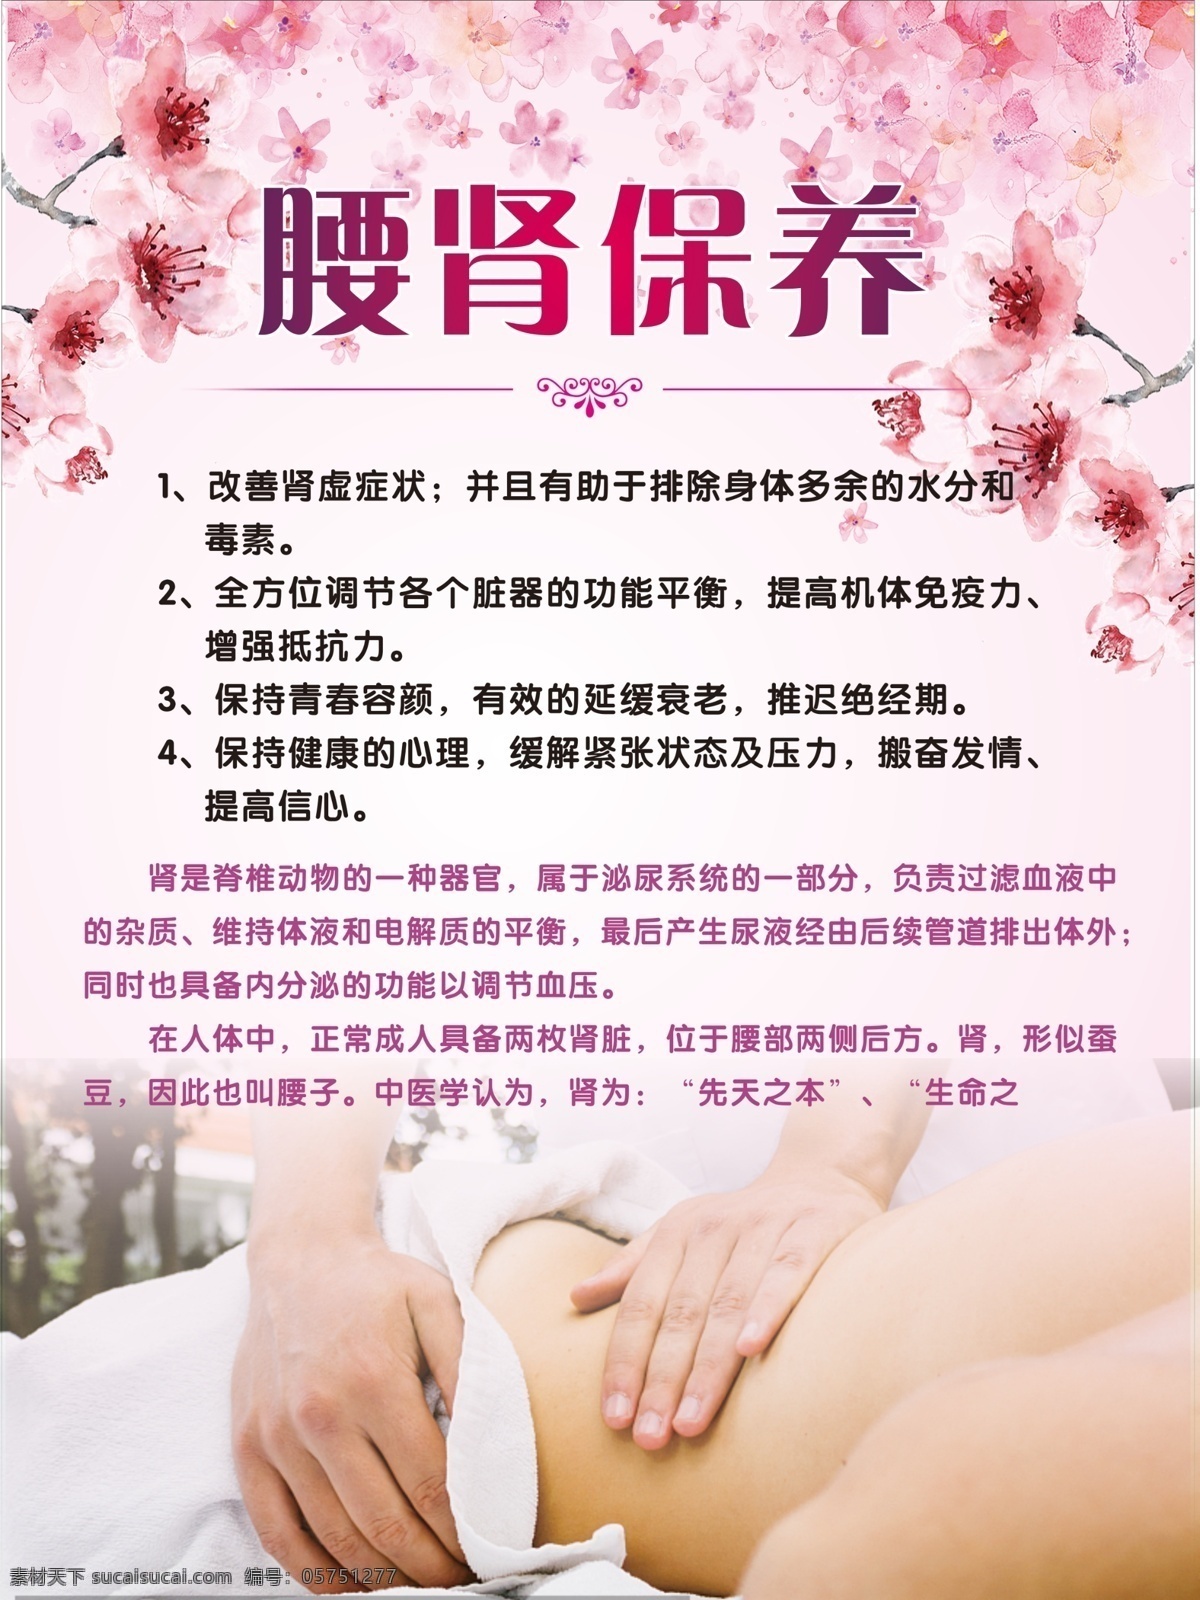 中医养生 身体护理 保养 美容宣传 广告 贴画 海报 功效 好处 腰肾保养